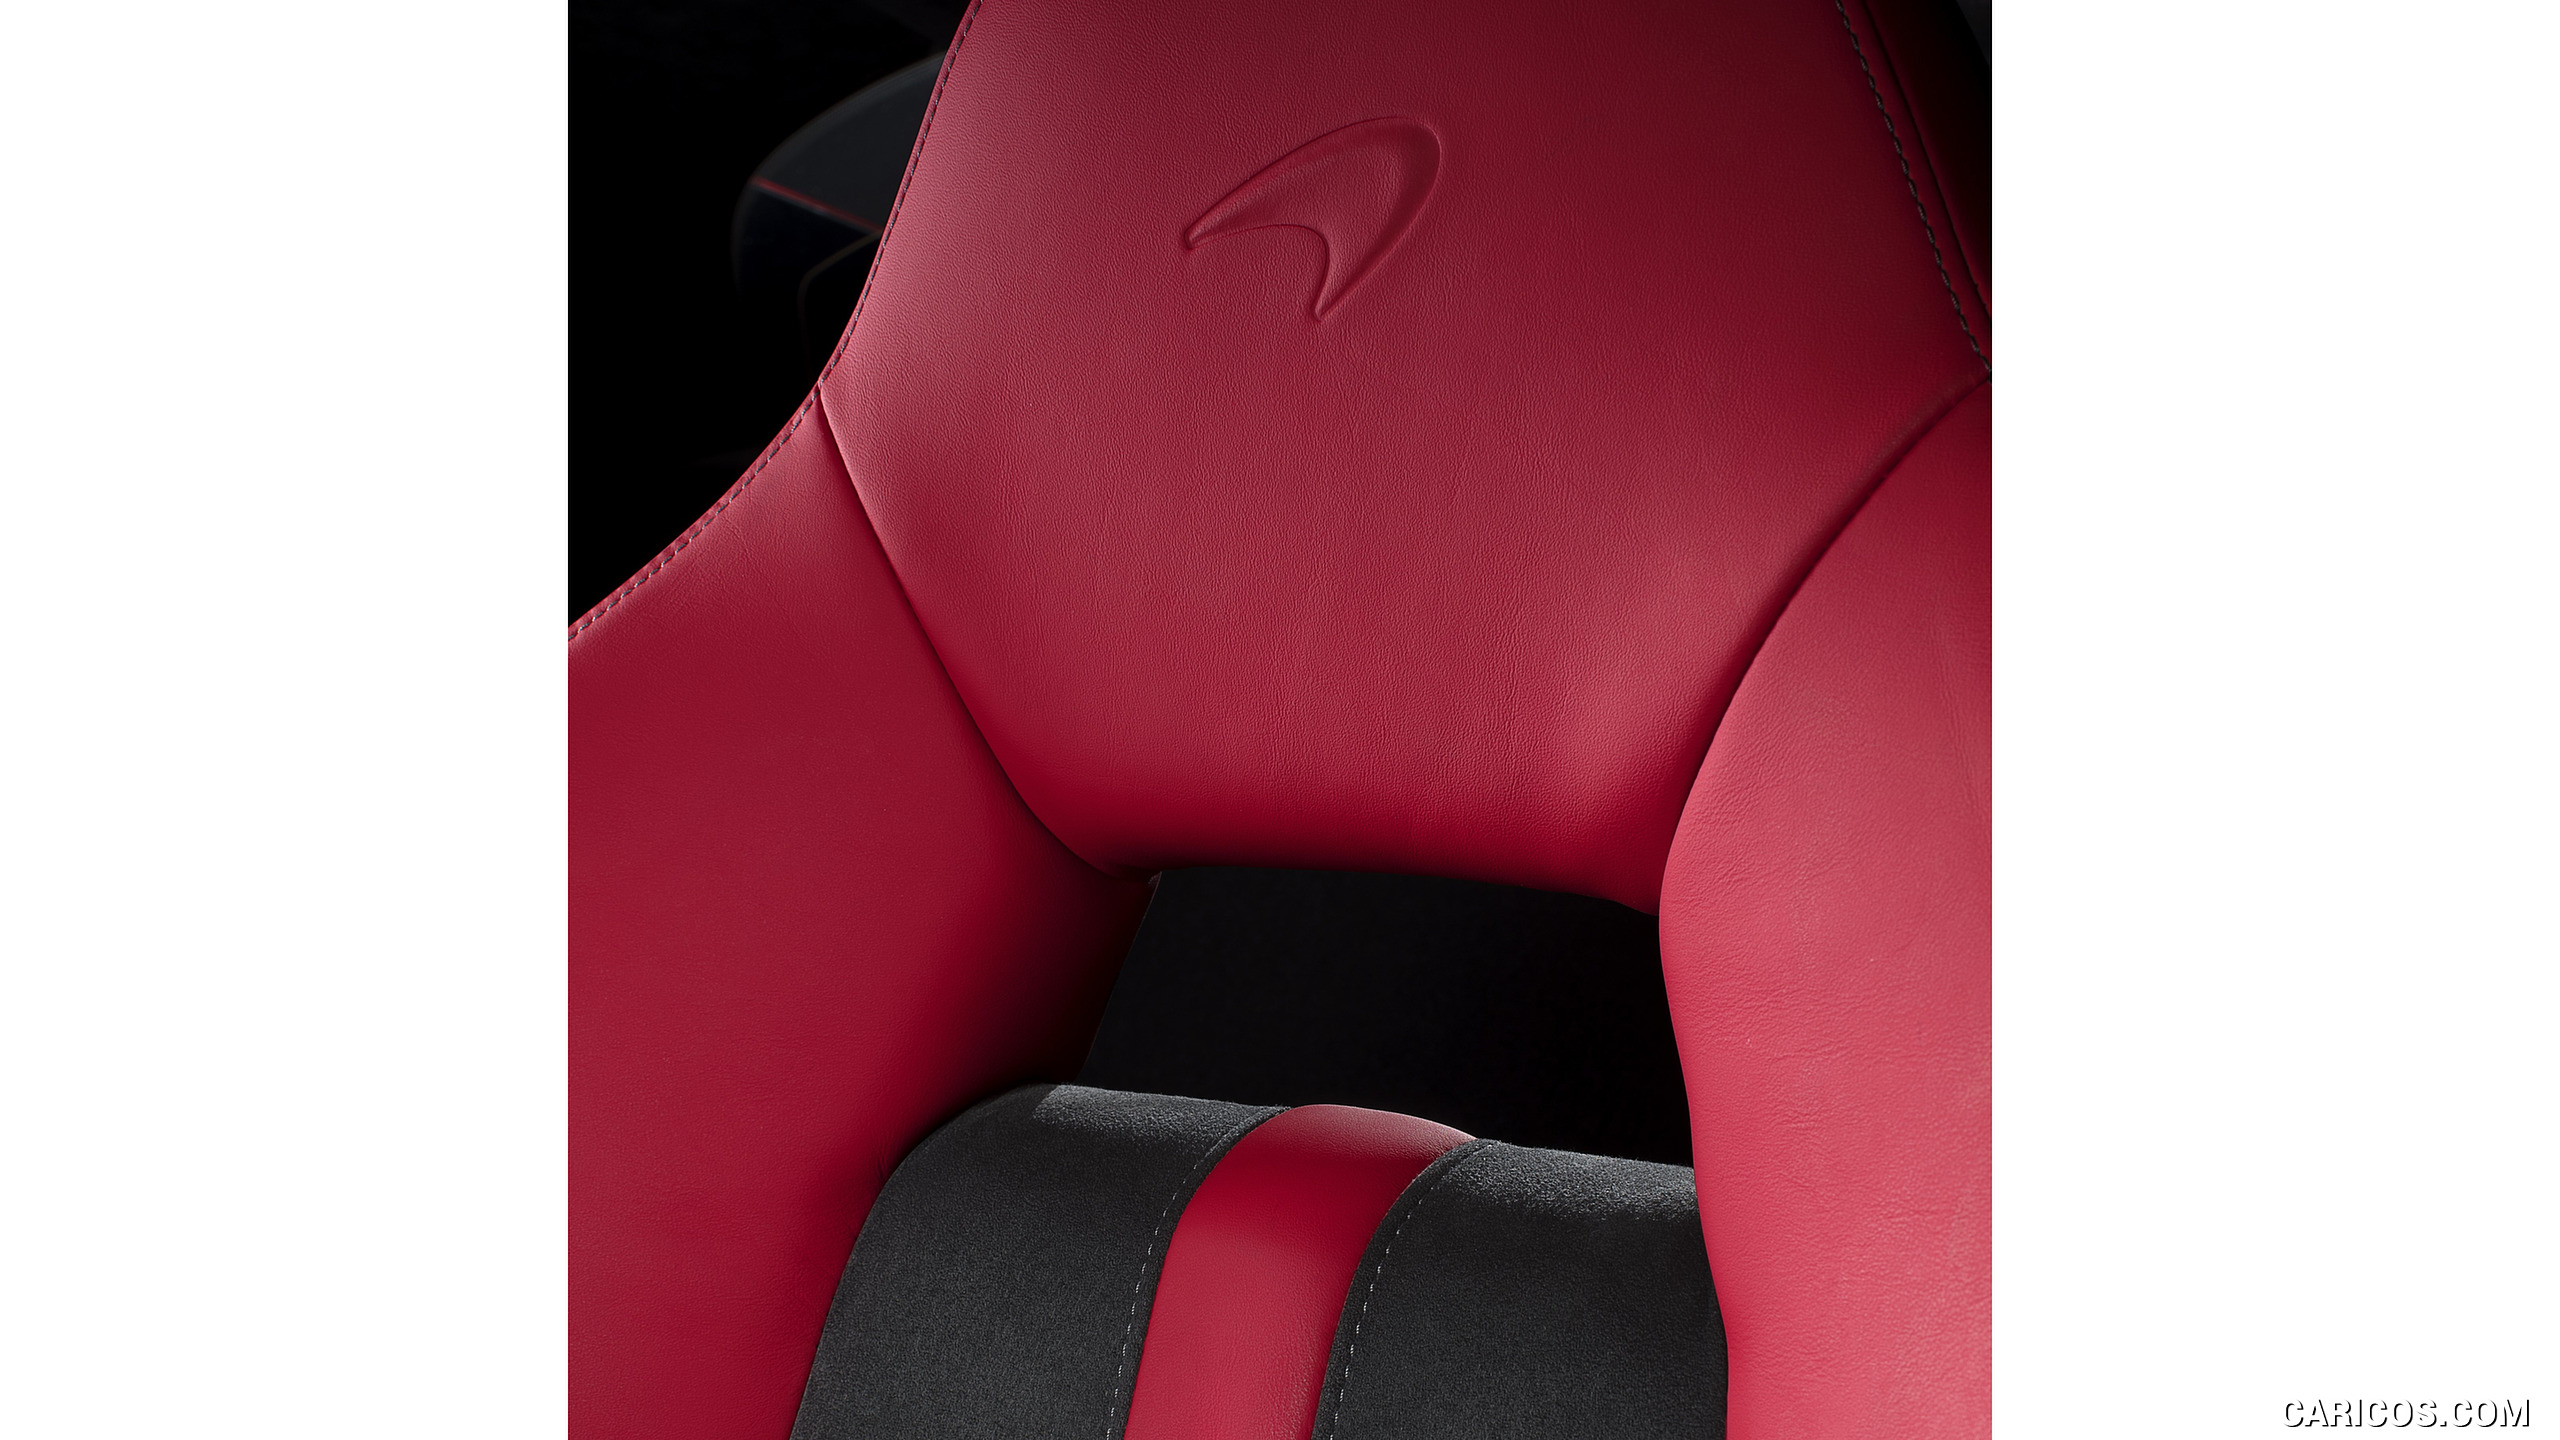 2017 McLaren 570S Design Edition - Interior, Seats, #6 of 6